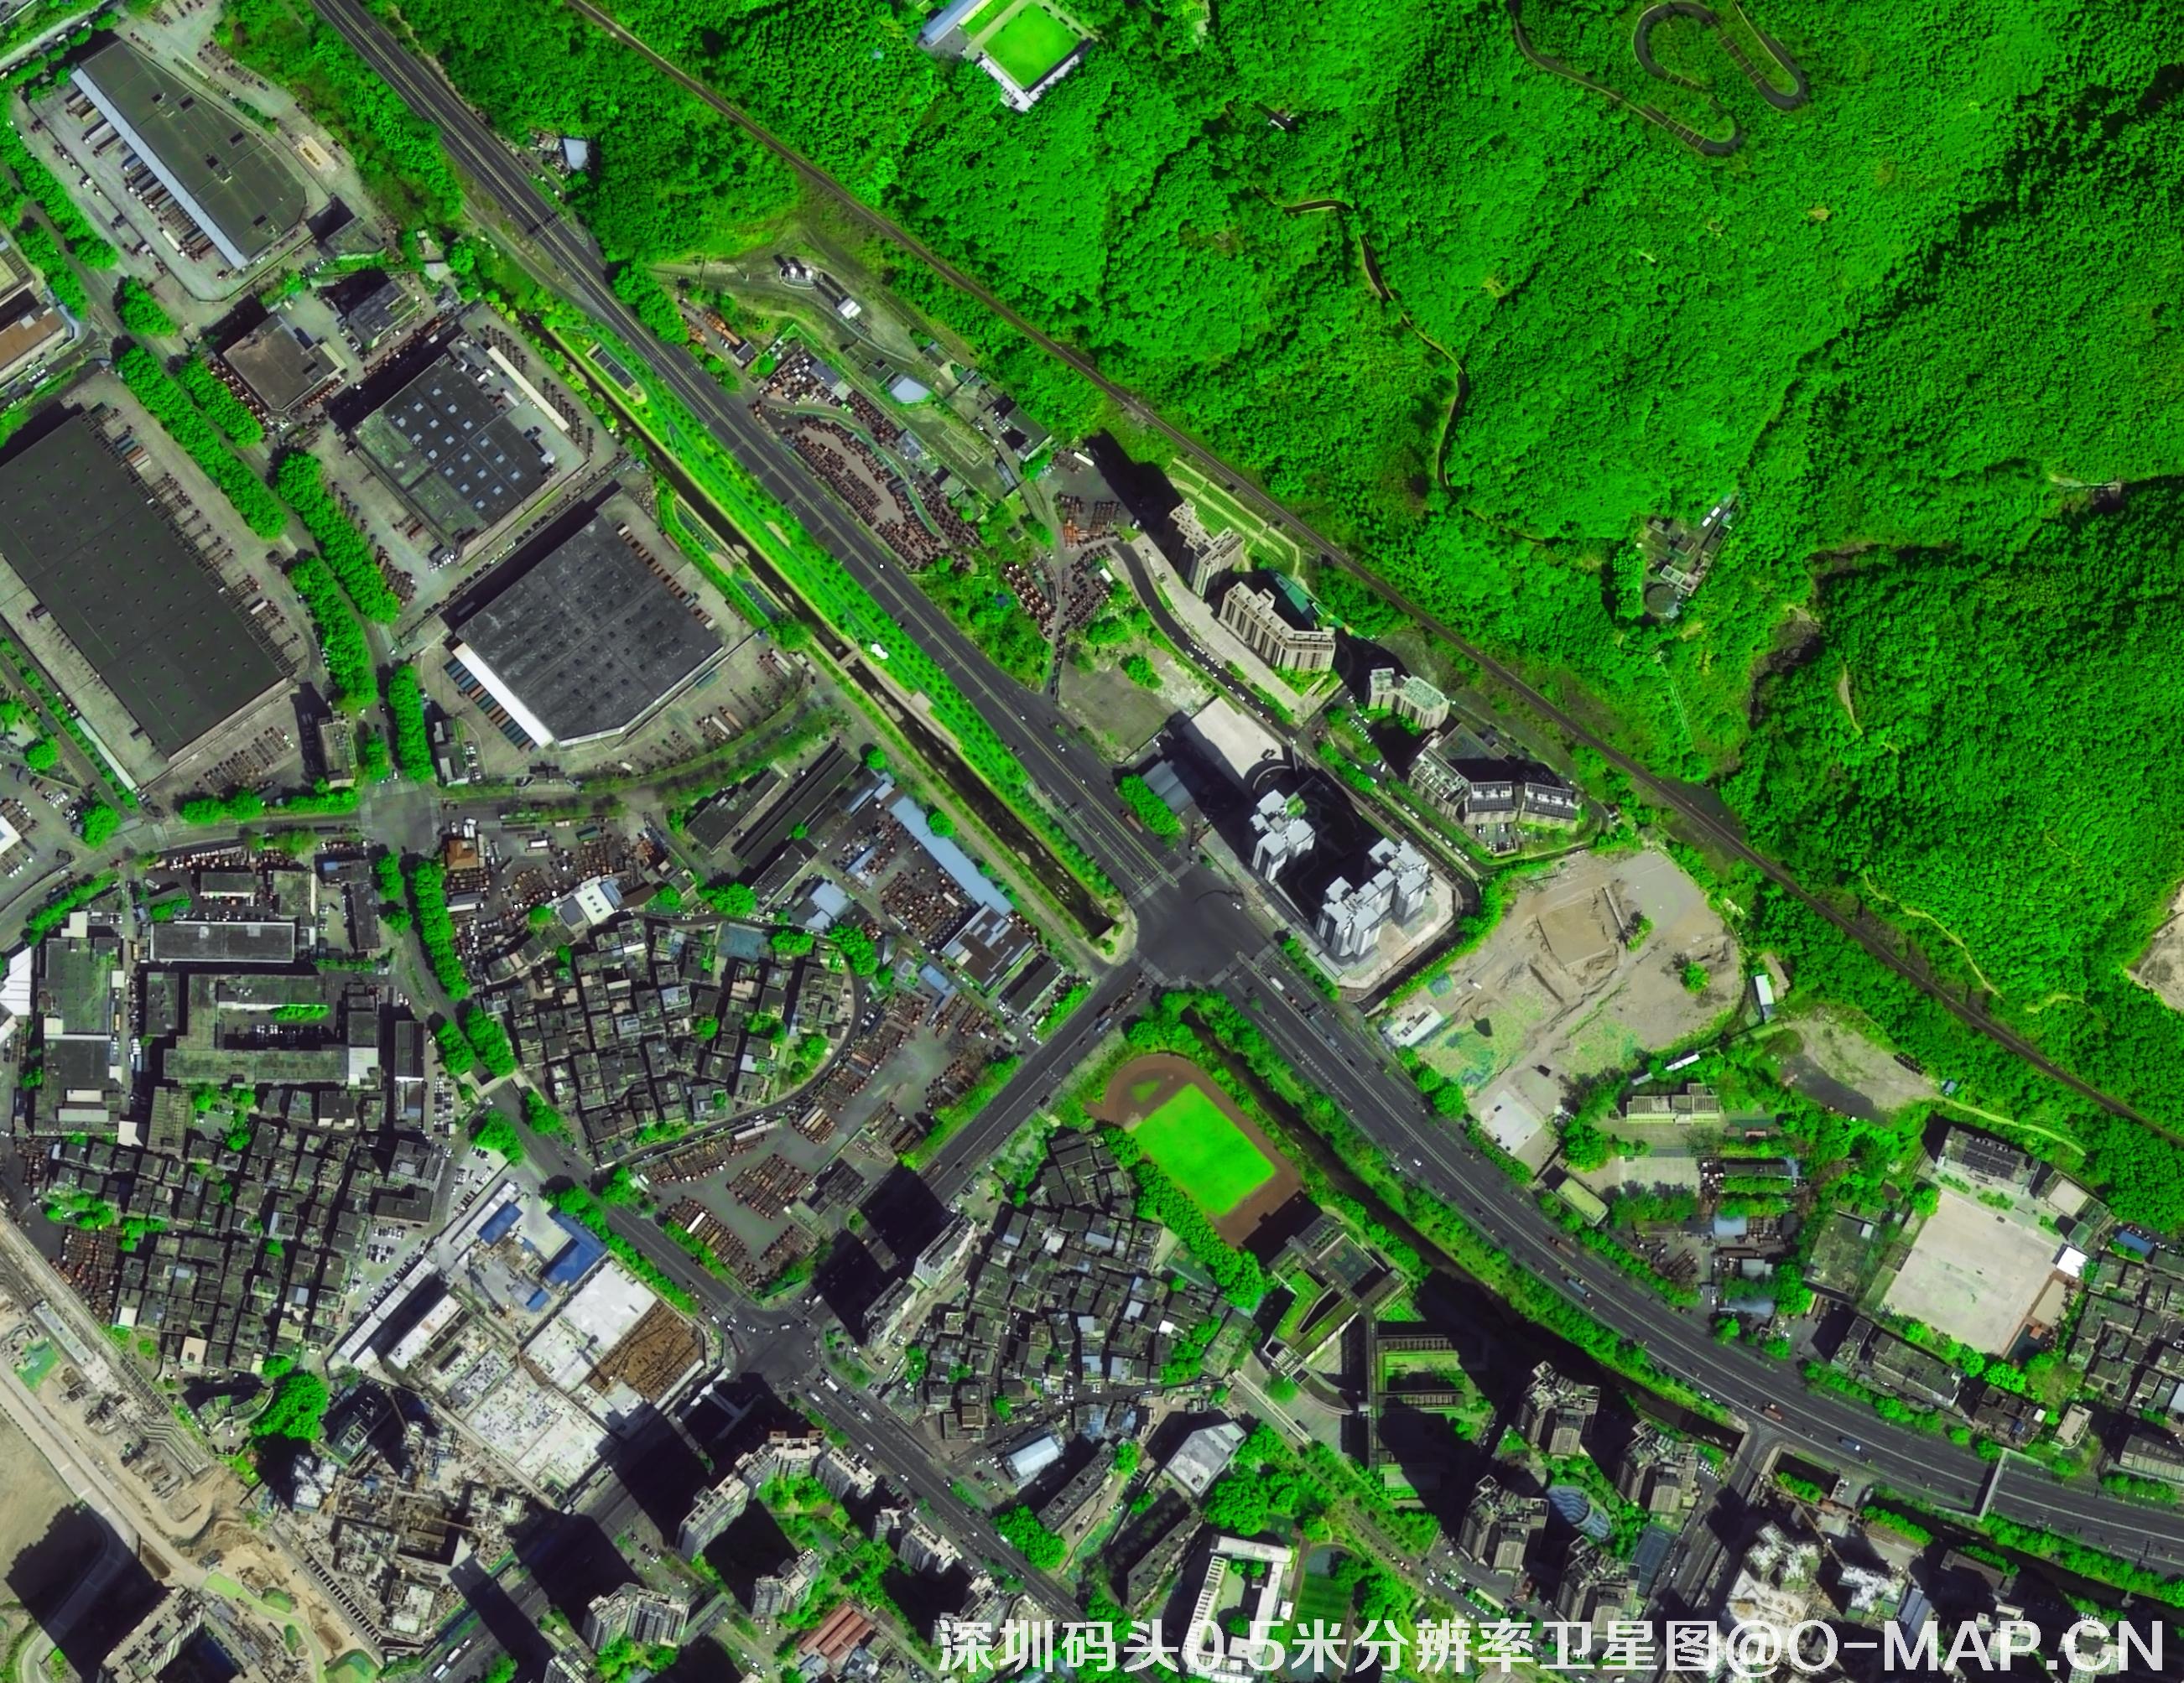 深圳市0.5米分辨率卫星图购买样例